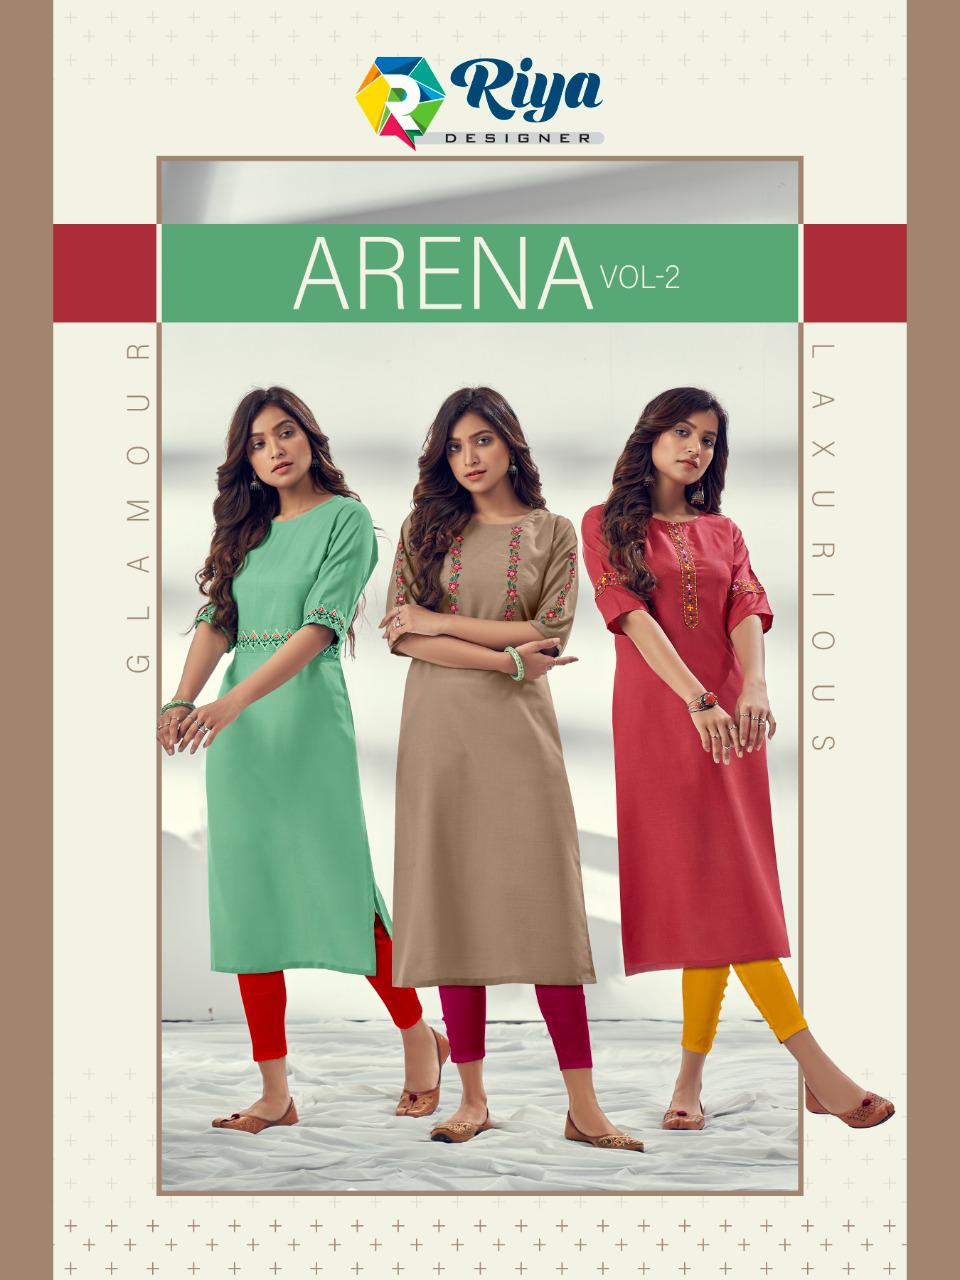 Riya Designer Arena Vol 2 Cotton Daily Wear Kurtis Collection Wholesale Price